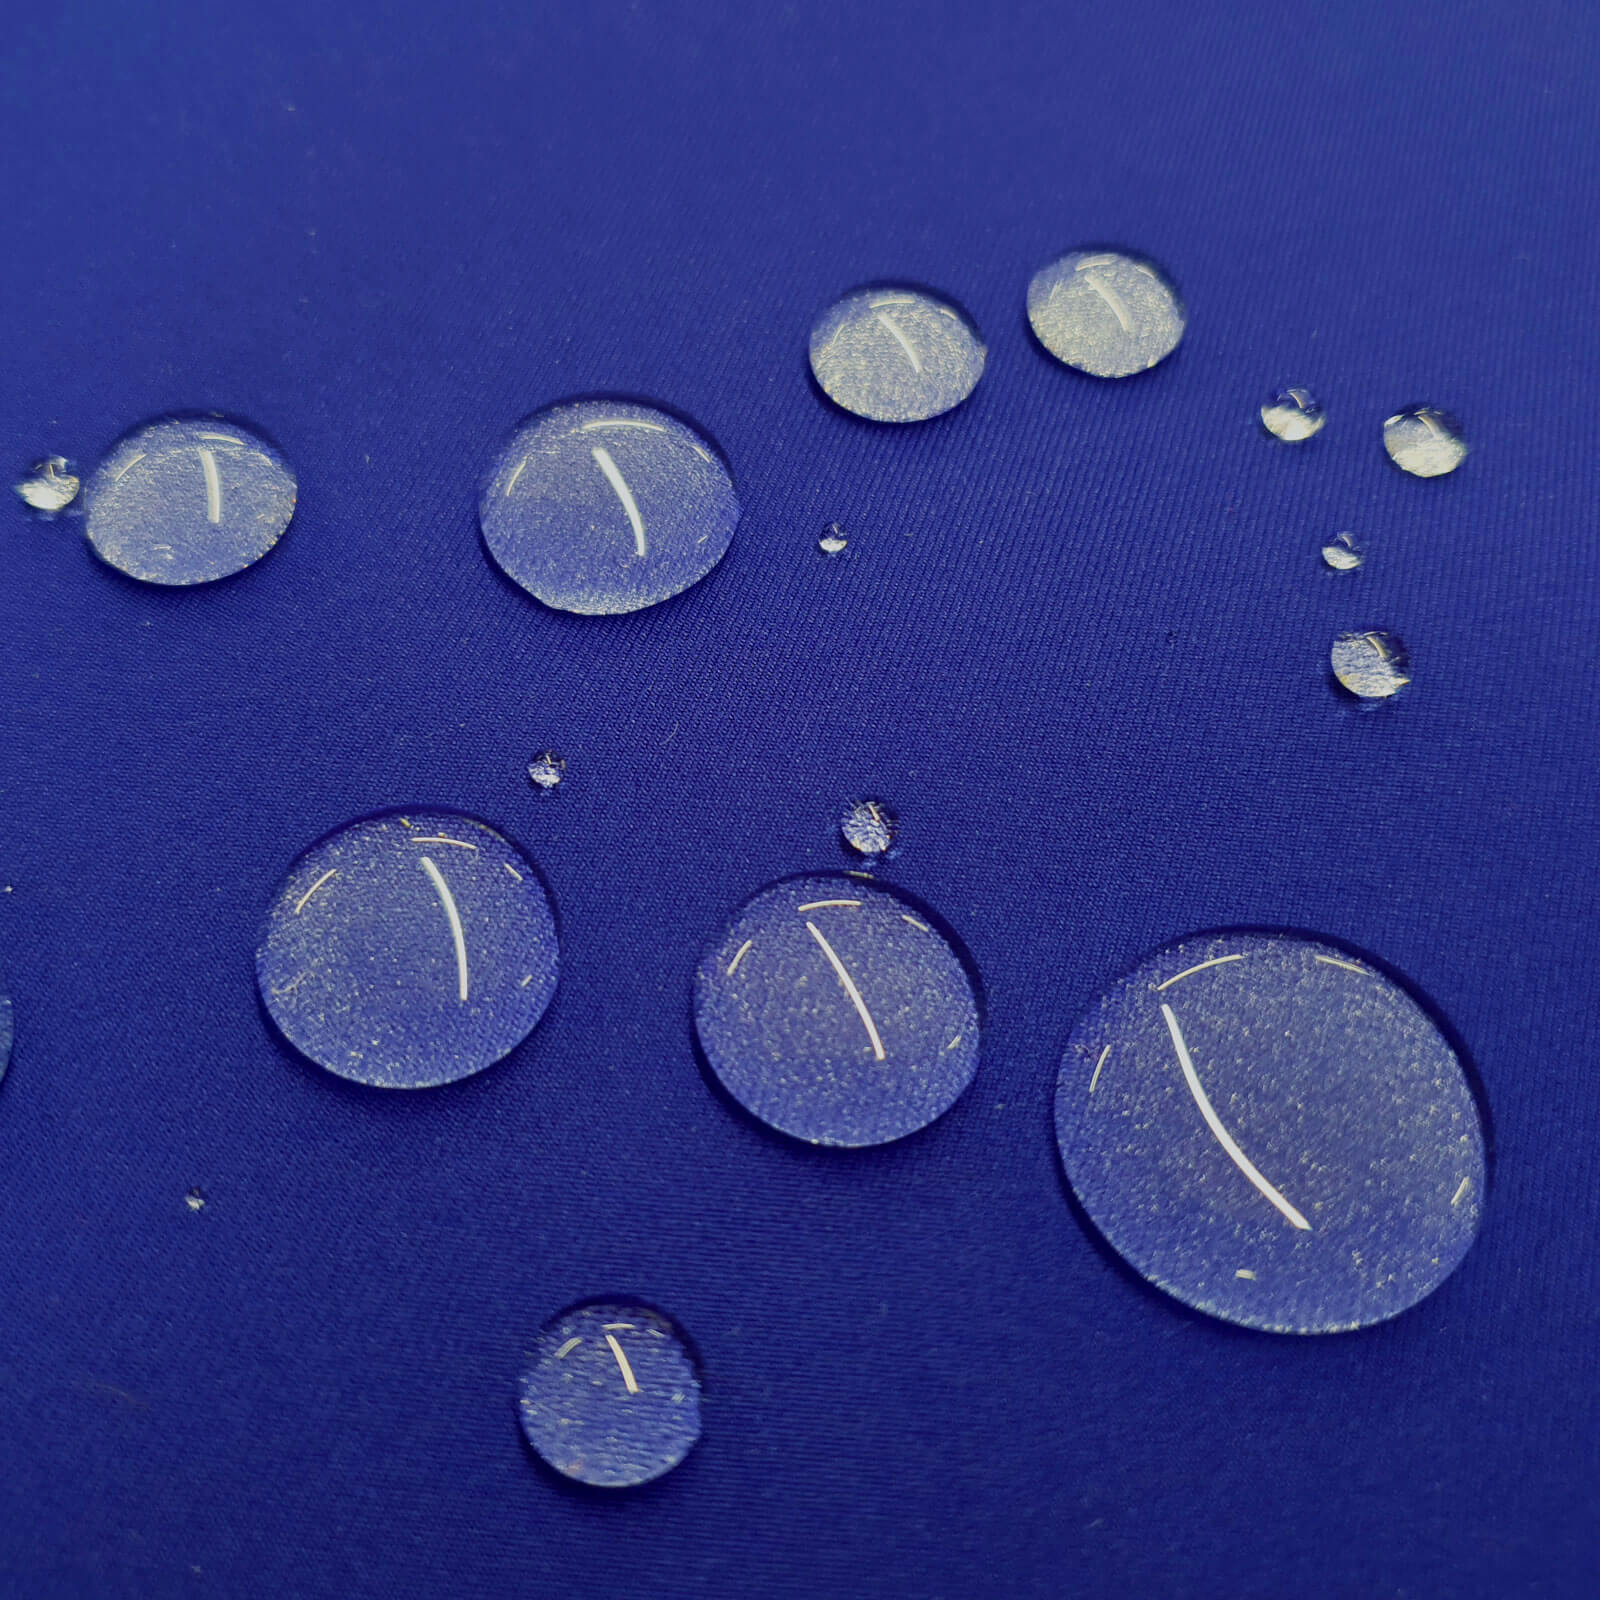 Anela - laminado de tejido exterior con membrana climática - Azul real